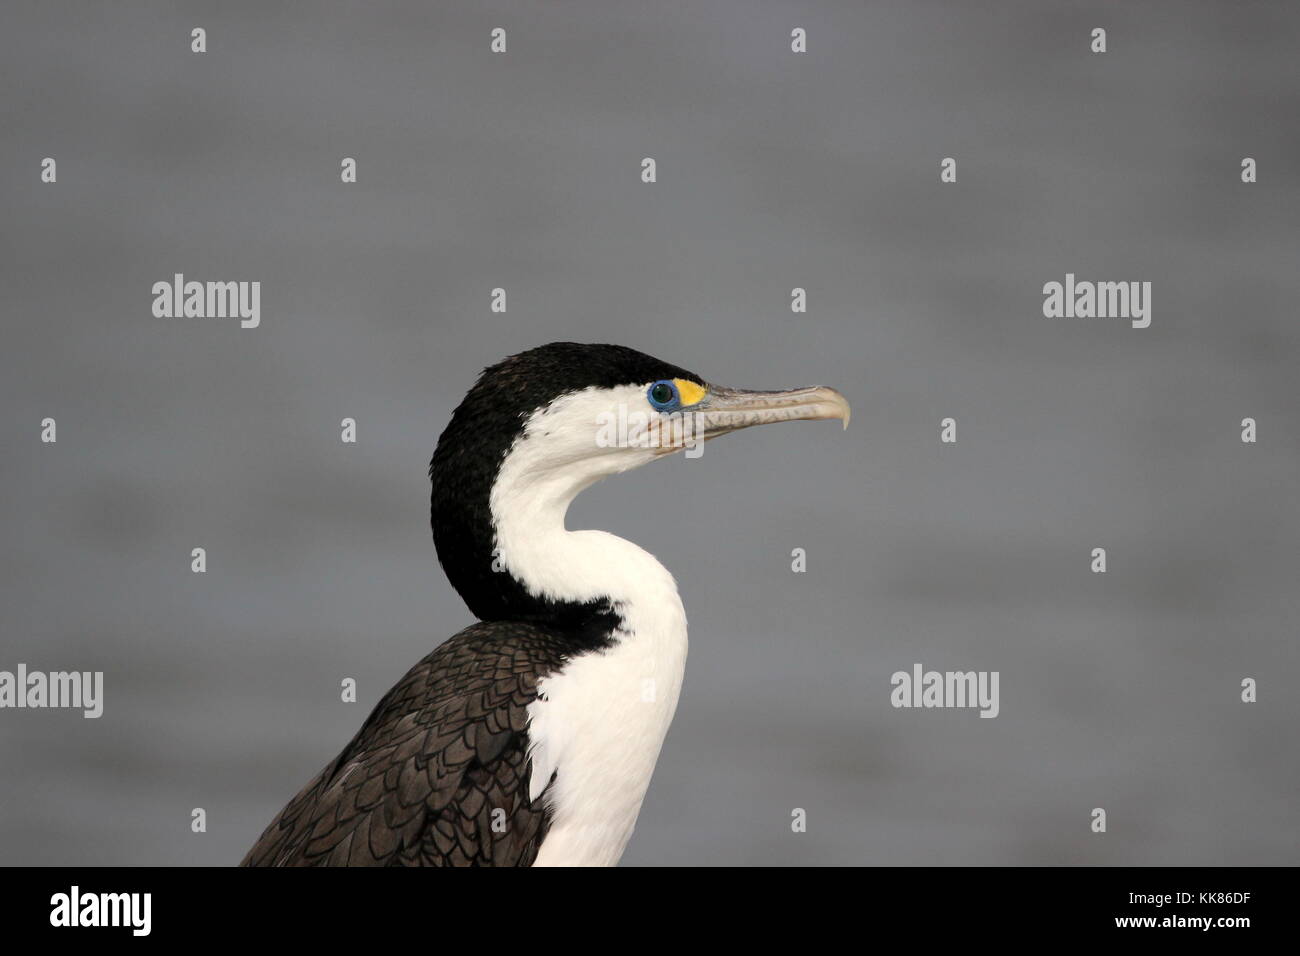 New Zealand pied shag (cormorant) Stock Photo